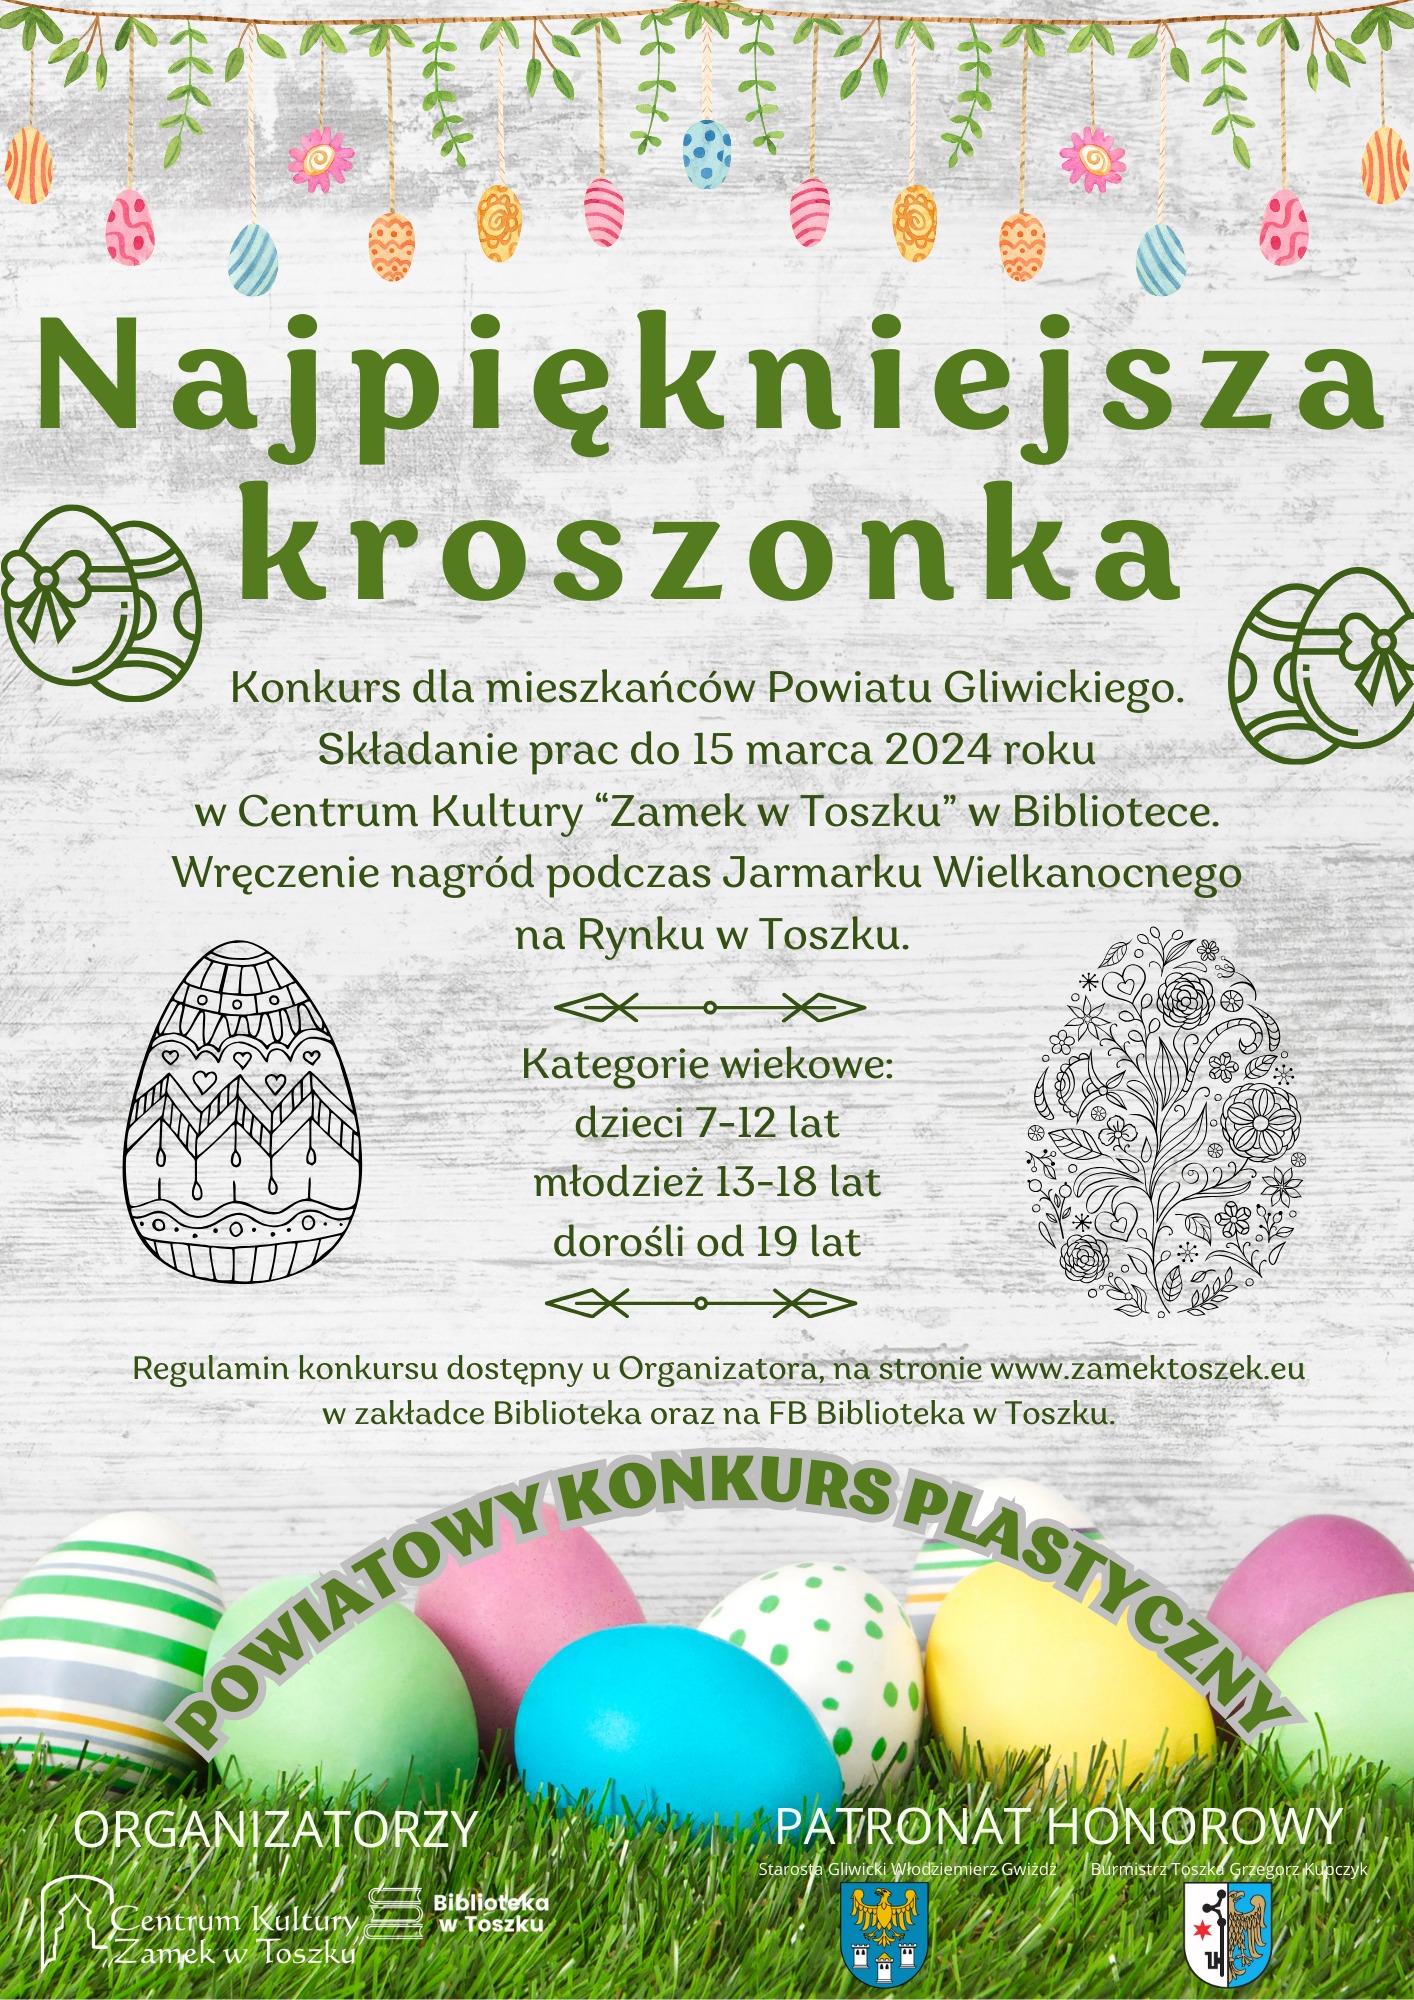 Plakat informujący o konkursie: Najpiększniejsza Kroszonka 2024